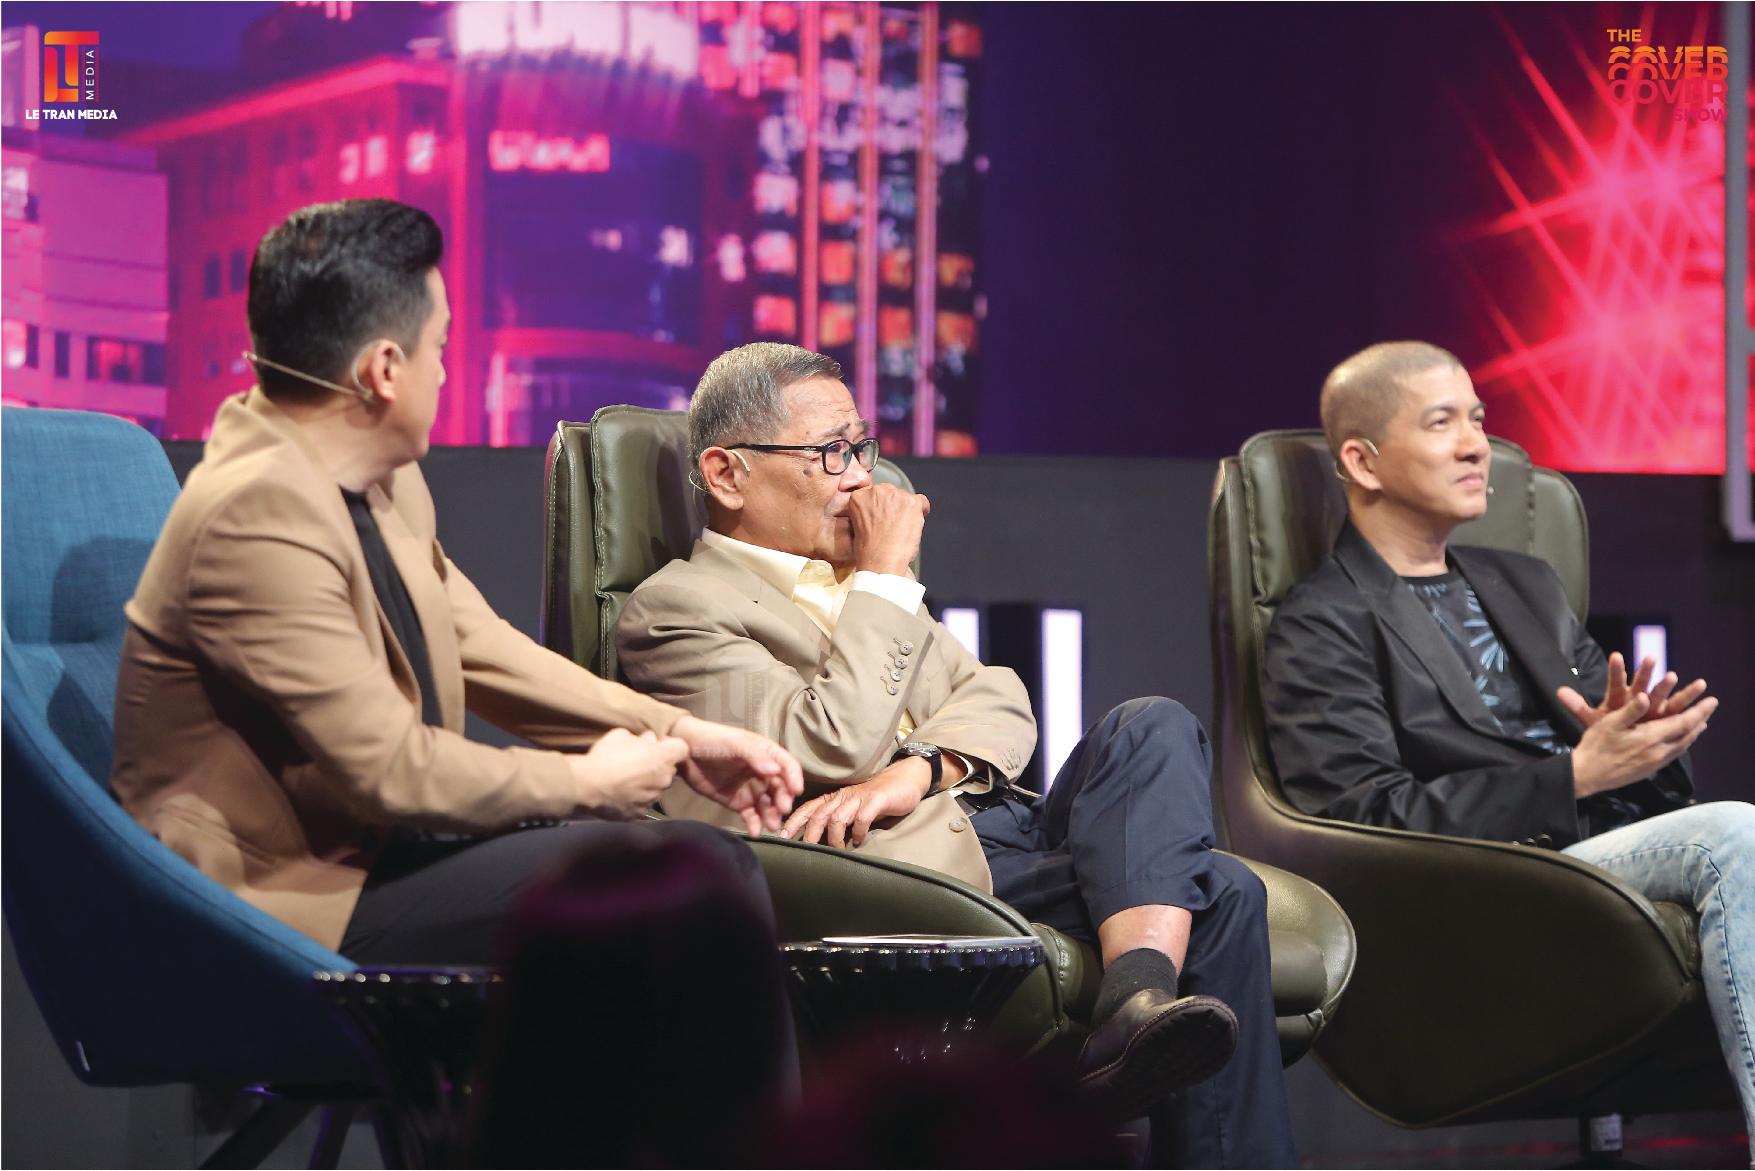 Trước đó, nhạc sĩ Bảo Chấn từng tham gia The Cover Show (ngồi giữa), chấm thi cùng ca sĩ Lam Trường, nhạc sĩ Hoài An